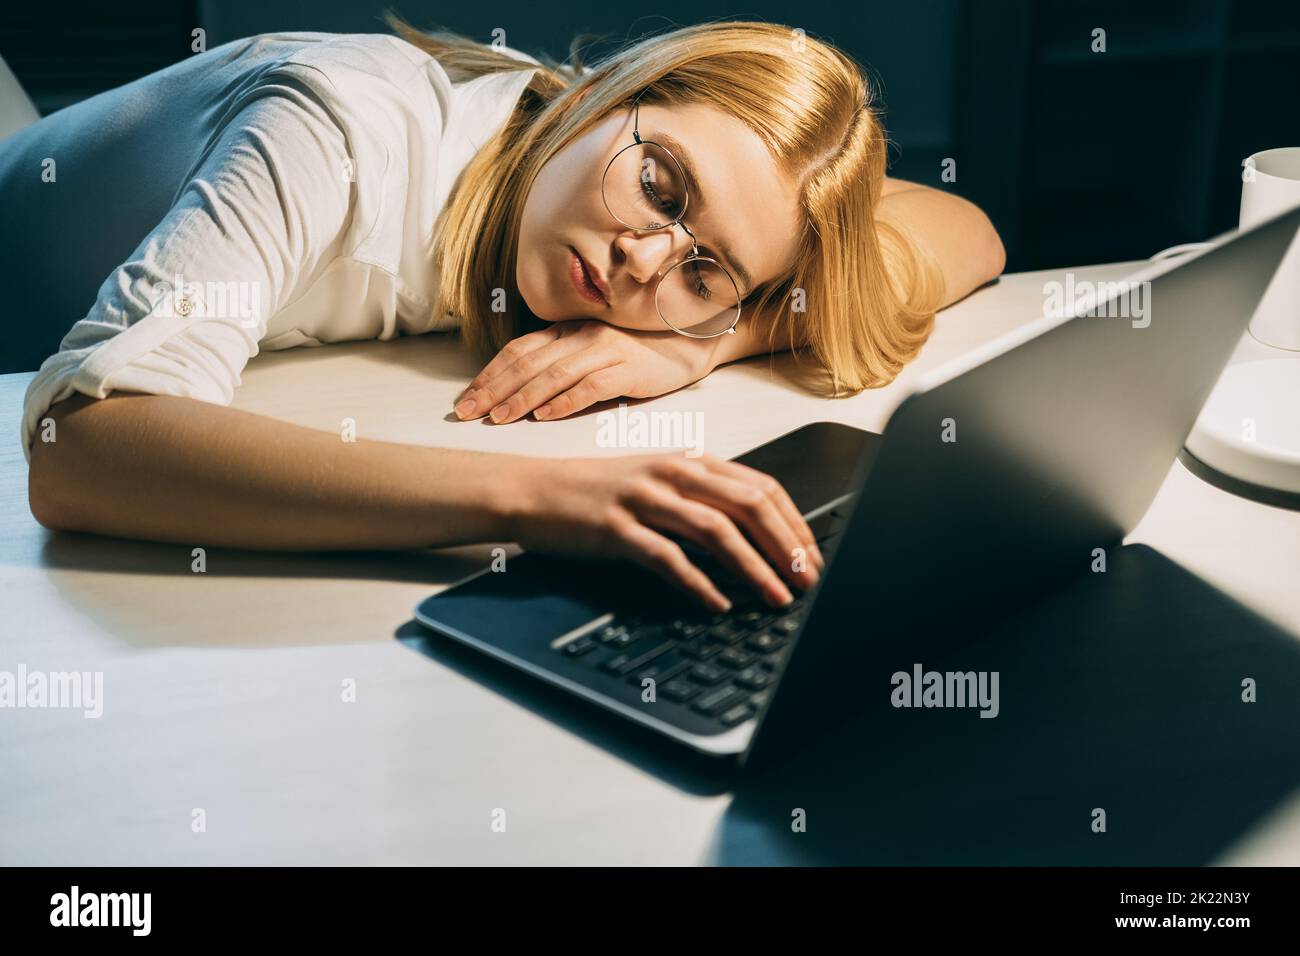 Fatigue du travail excessif. Date limite de la tâche. Charge de travail non saine. Une femme fatiguée, épuisée, dormant sur un ordinateur portable dans un bureau sombre Banque D'Images